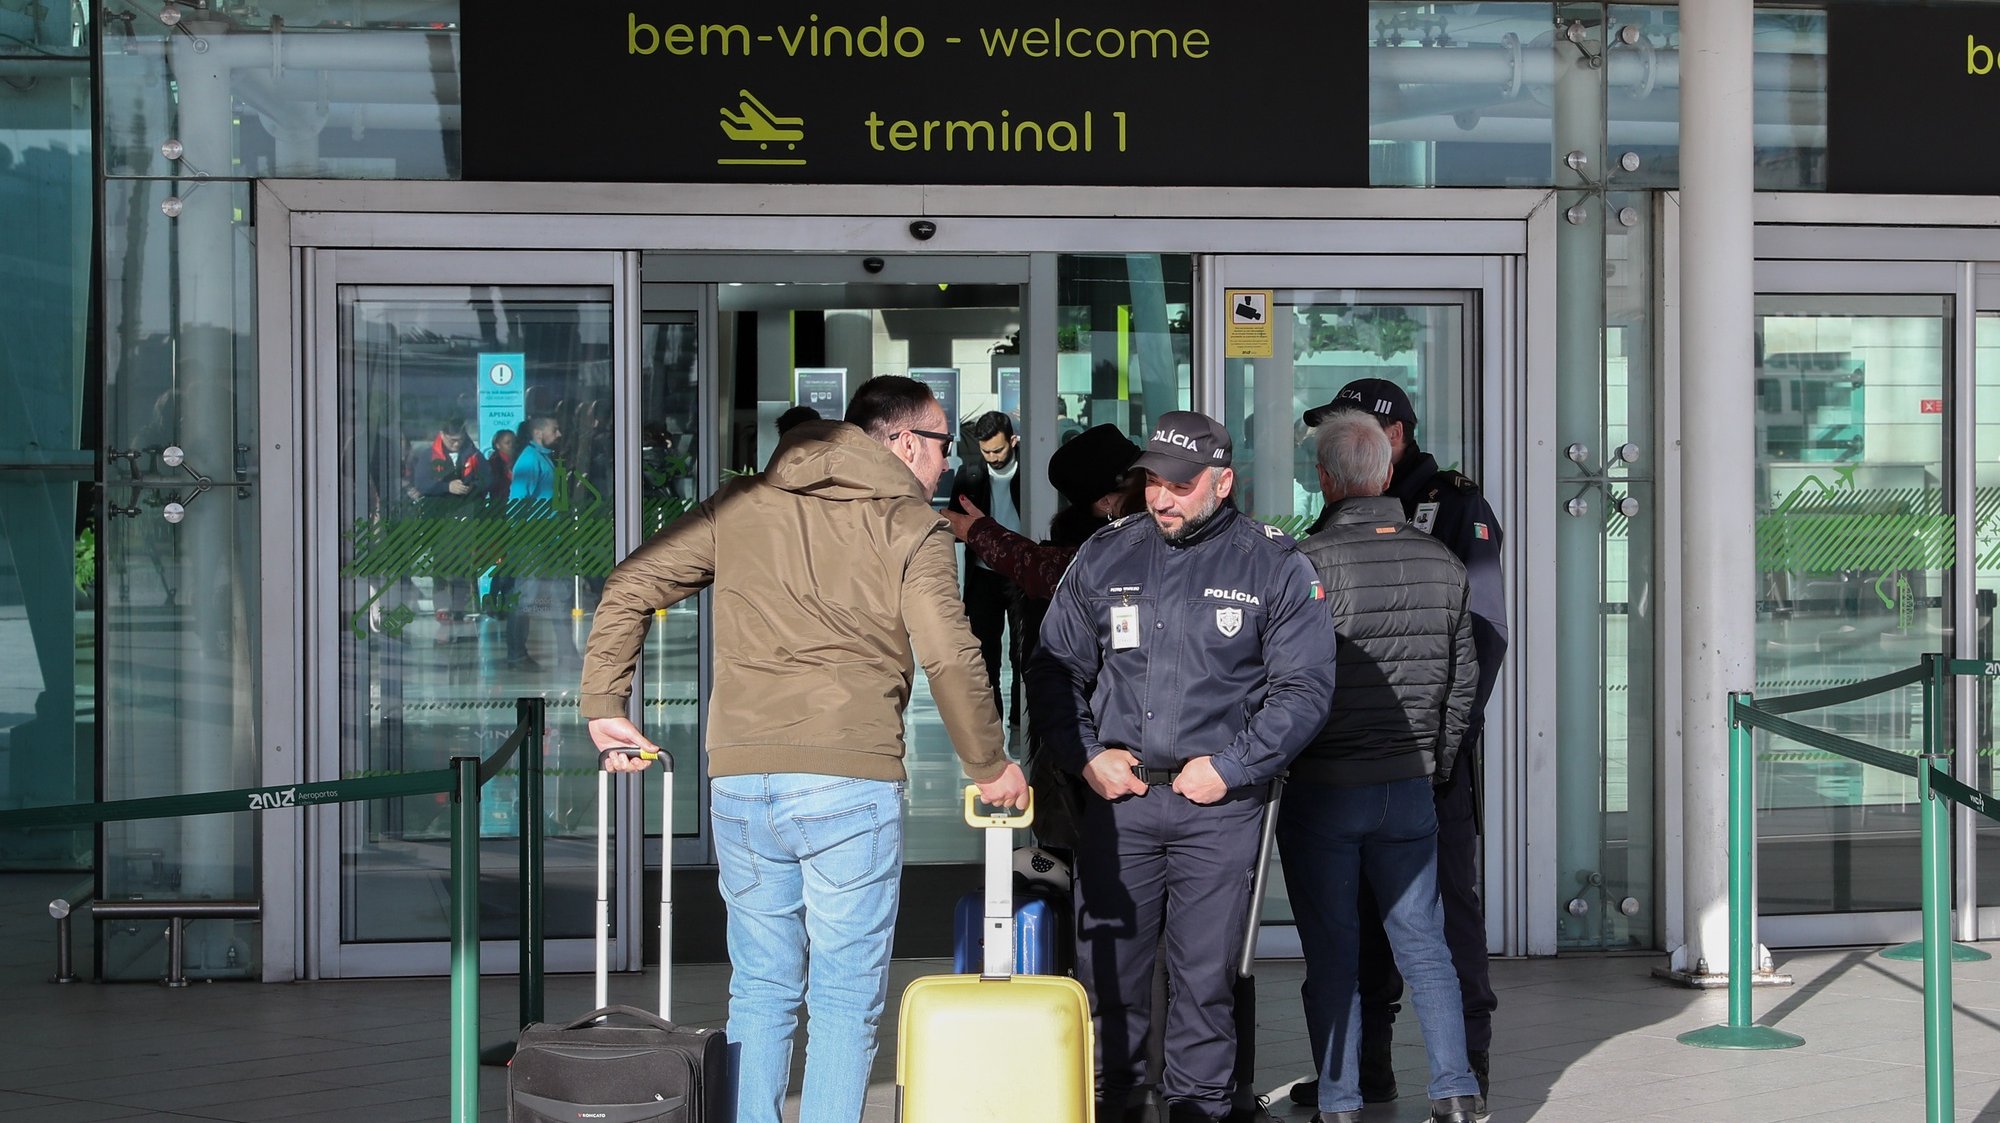 Polícias da PSP revistam passageiros à entrada do Aeroporto Humberto Delgado, Lisboa, 21 de janeiro de 2020. Elementos da PSP e da GNR realizam hoje protestos em simultâneo em Braga, Lisboa e Faro, numa ação convocada pelos sindicatos, enquanto o Movimento Zero (M0) inicia uma vigília nos aeroportos portugueses.  JOÃO RELVAS/LUSA